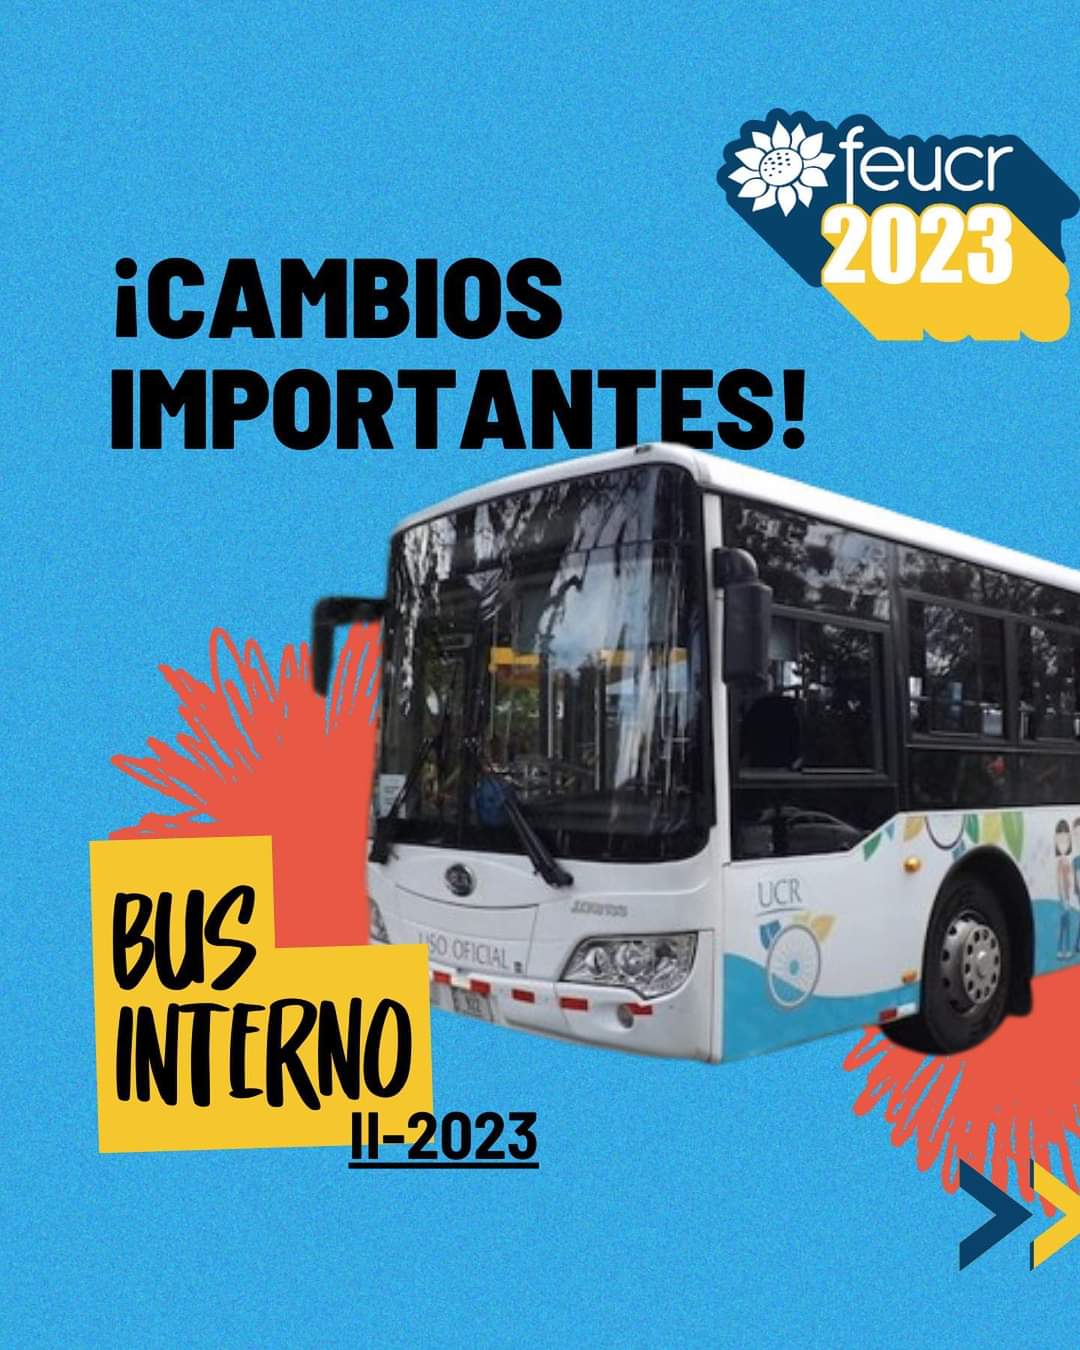 Foto de Bus con Título ¡Cambios Importantes en Bus Interno! y logo de la FEUCR